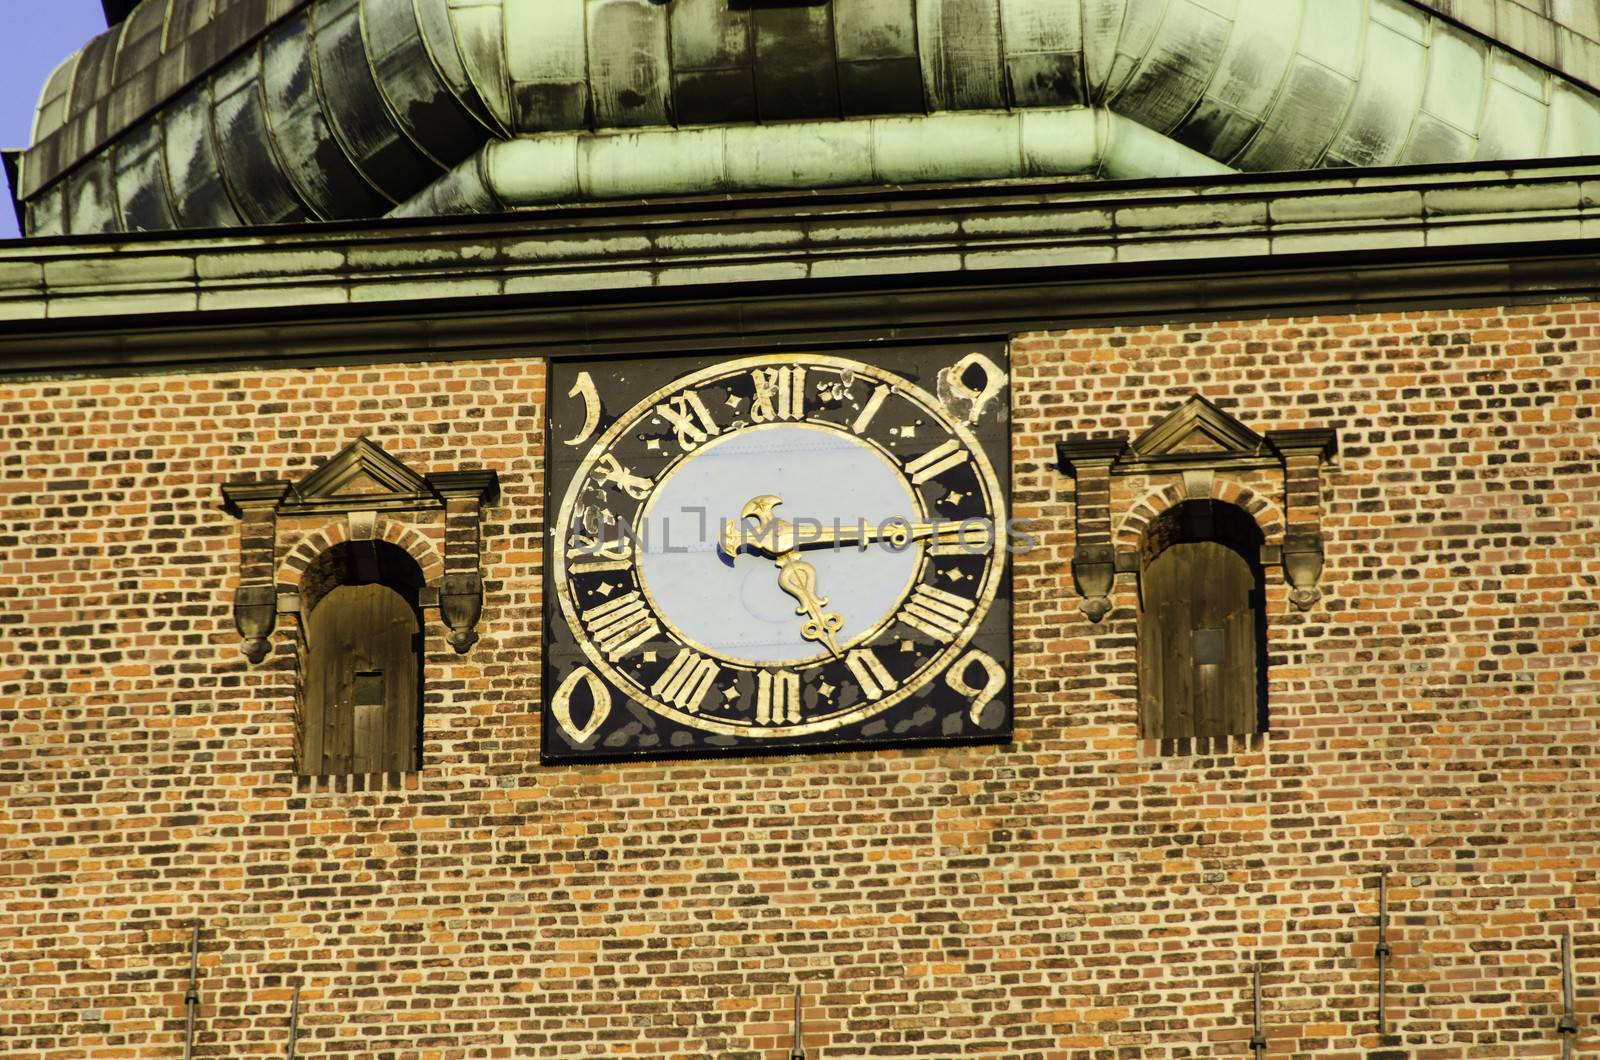 Church clock by Arrxxx